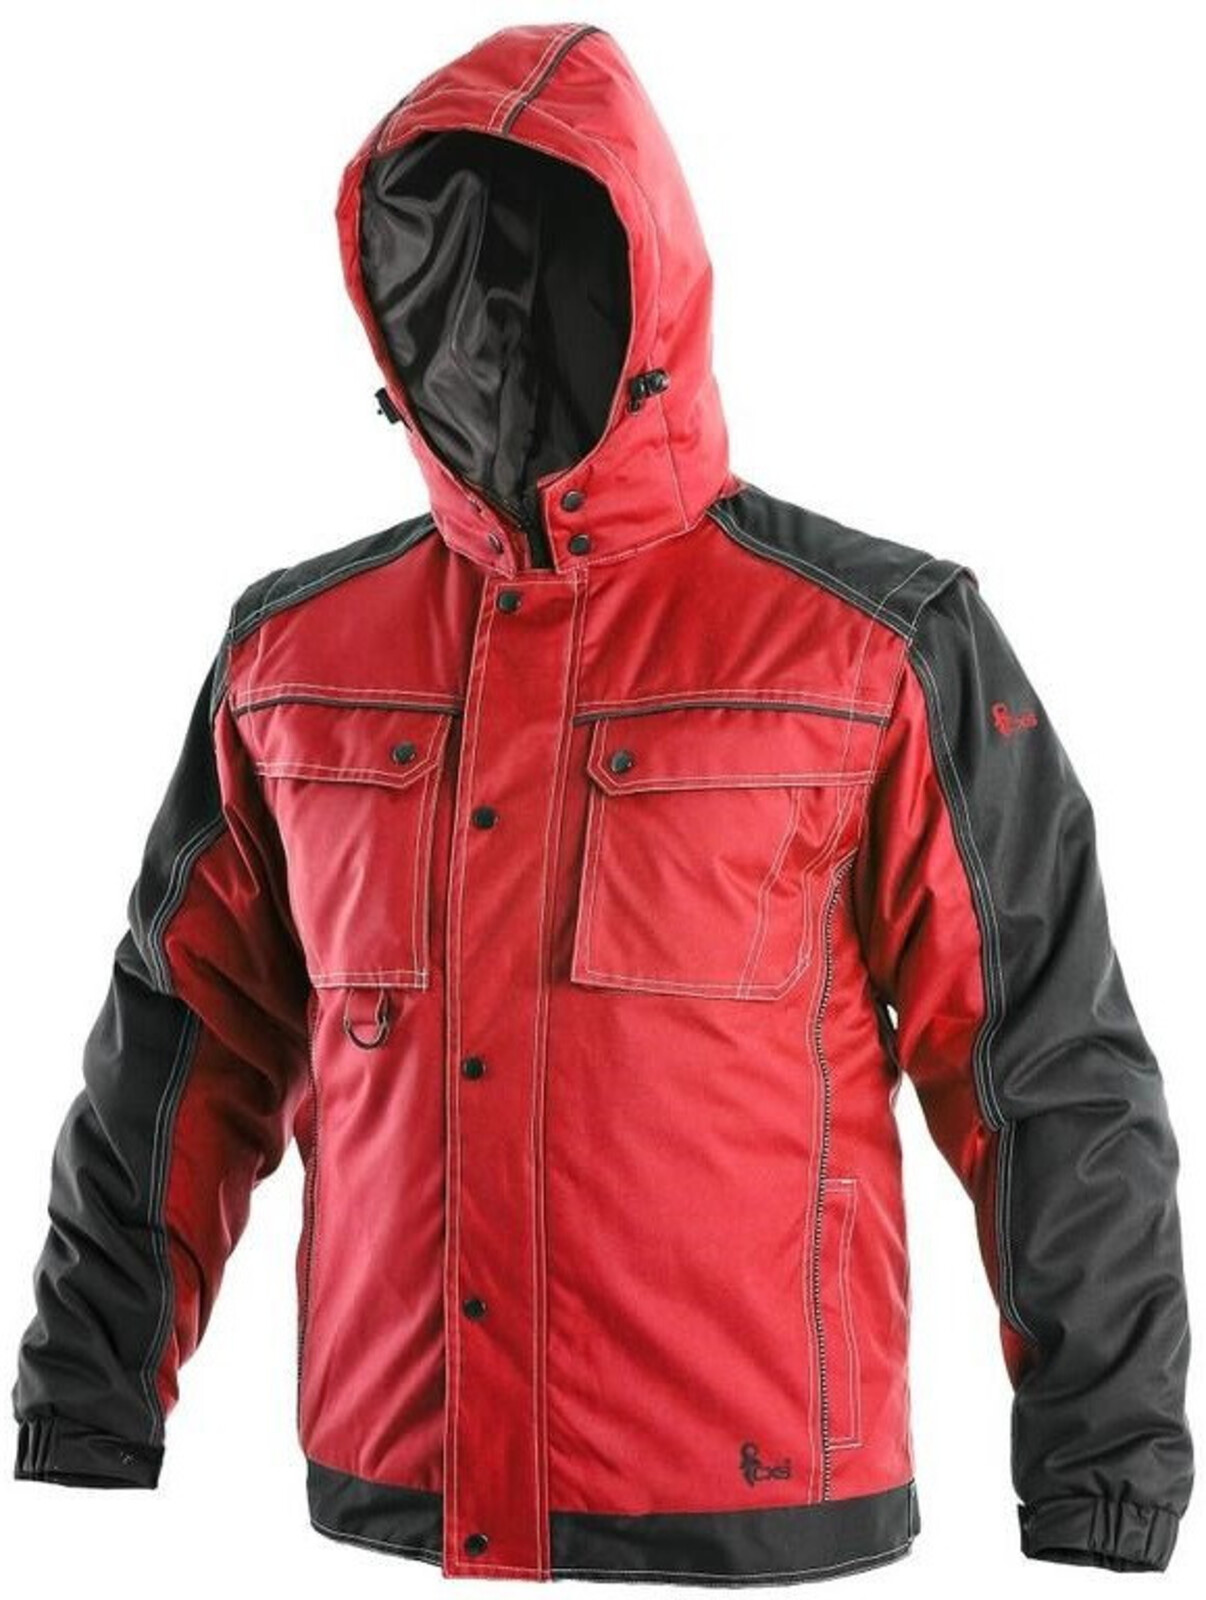 Pánska zimná bunda CXS Irvine 2v1 - veľkosť: 4XL, farba: červená/čierna